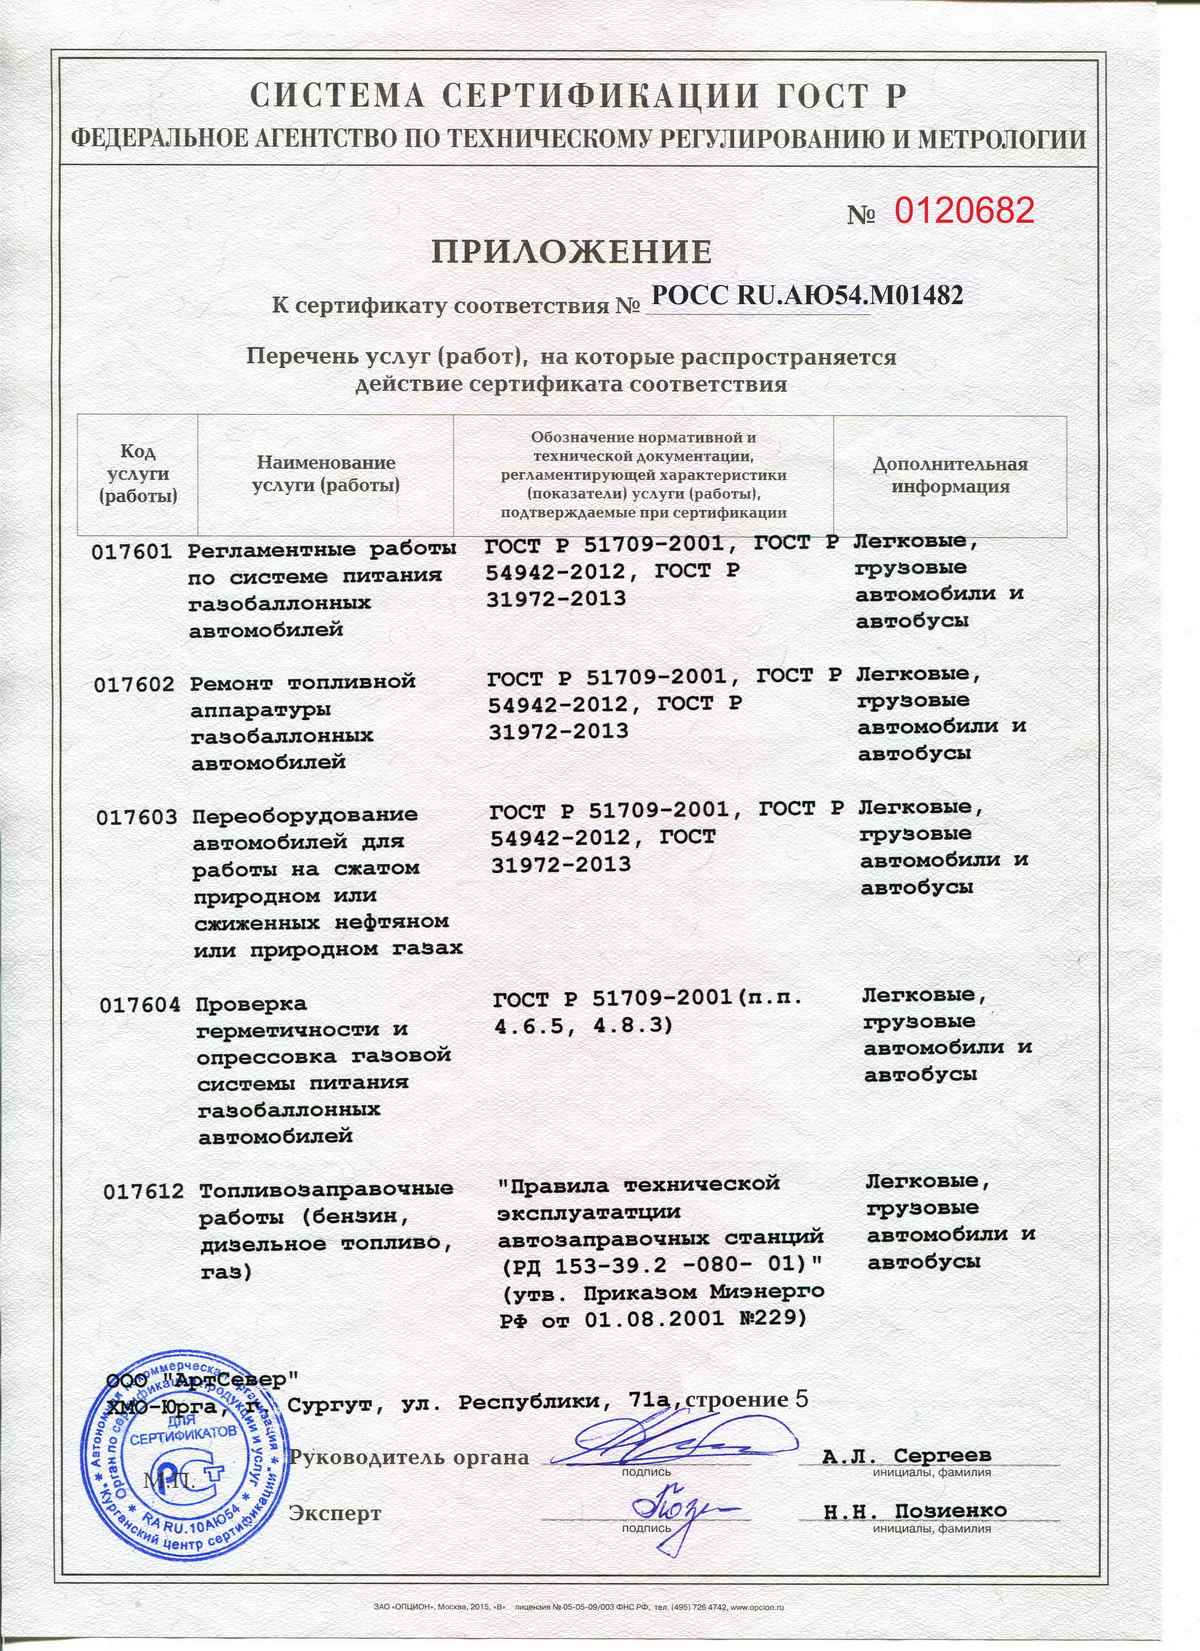 Приложение к сертификату - "АвтоГаз", Сургут, Ханты-Мансийский АО